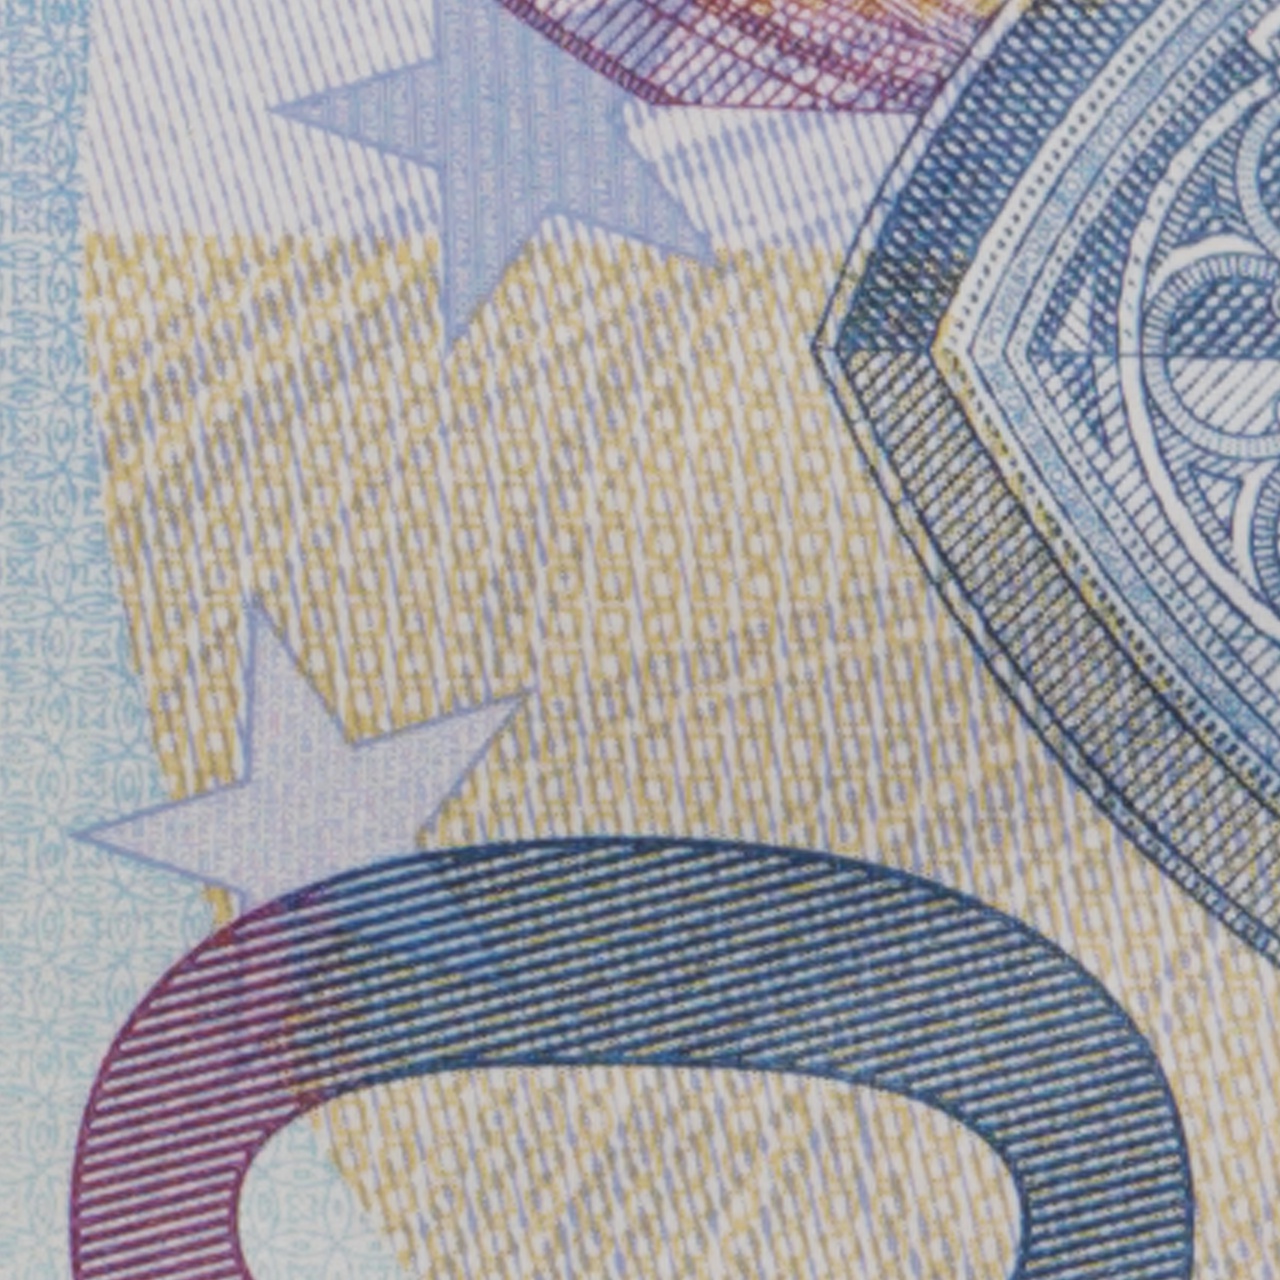 Euro_Banknotes_Detail_closer_DNG.jpg